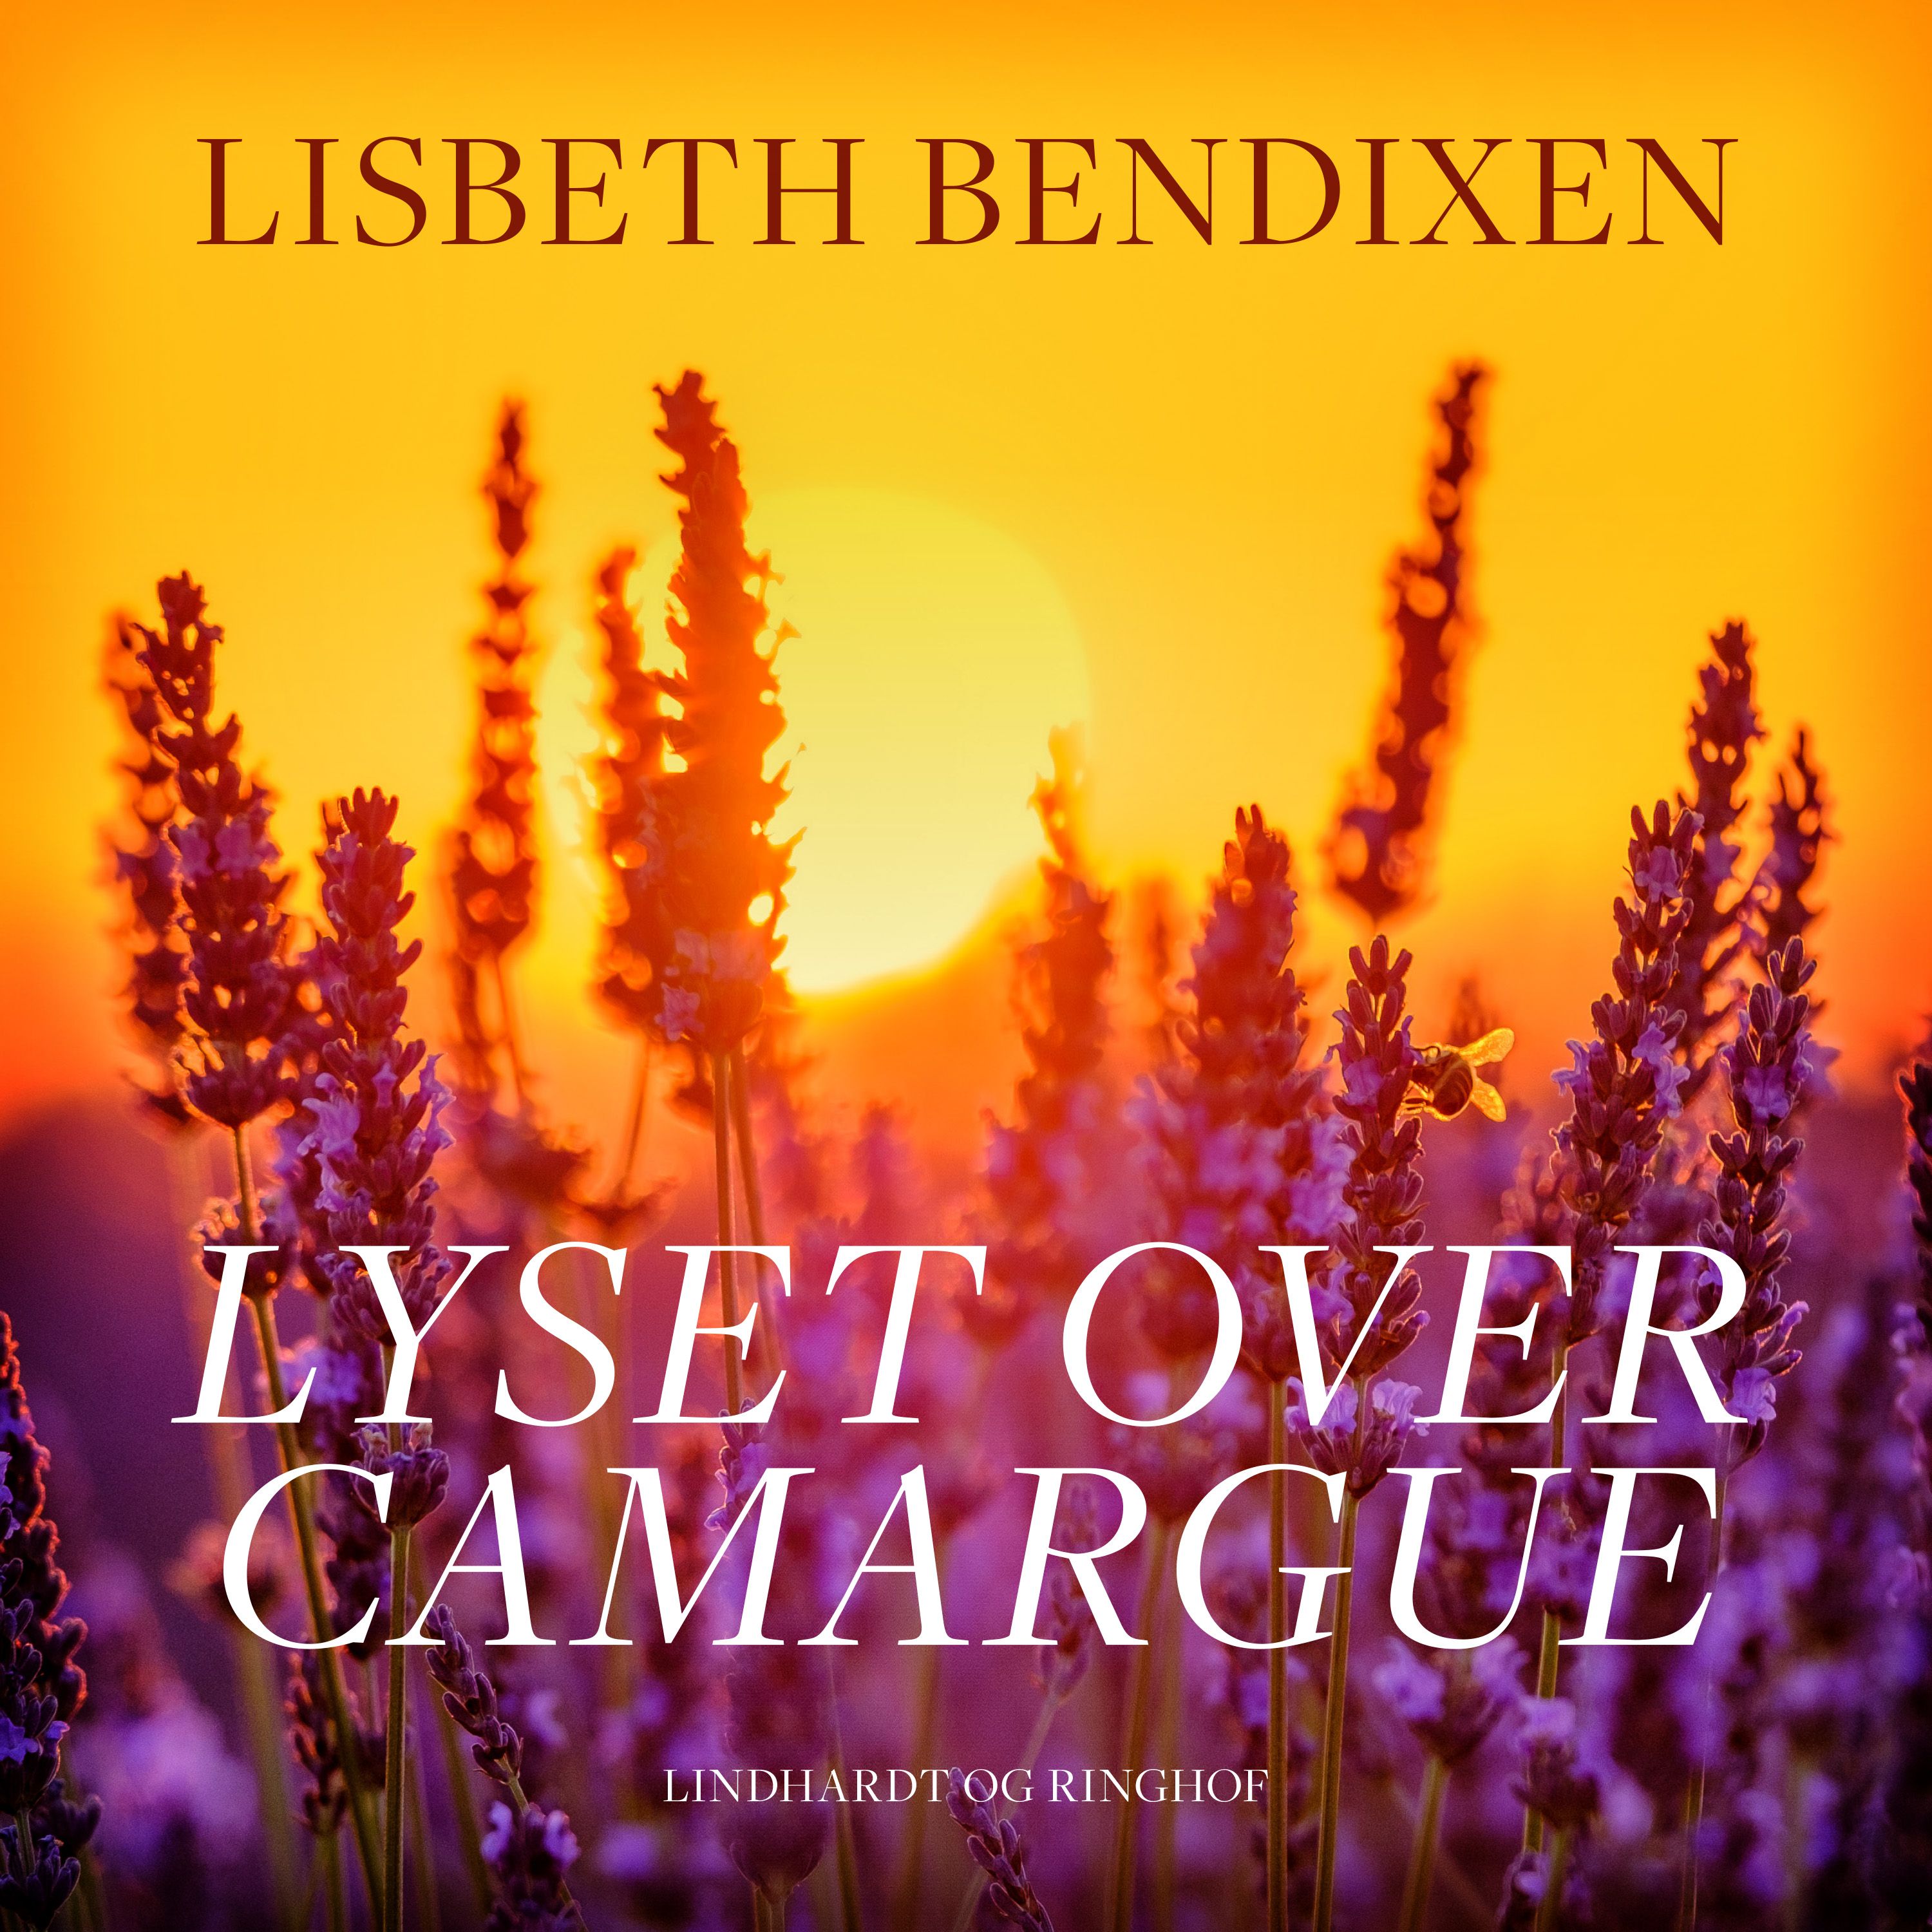 Lyset over Camargue, ljudbok av Lisbeth Bendixen